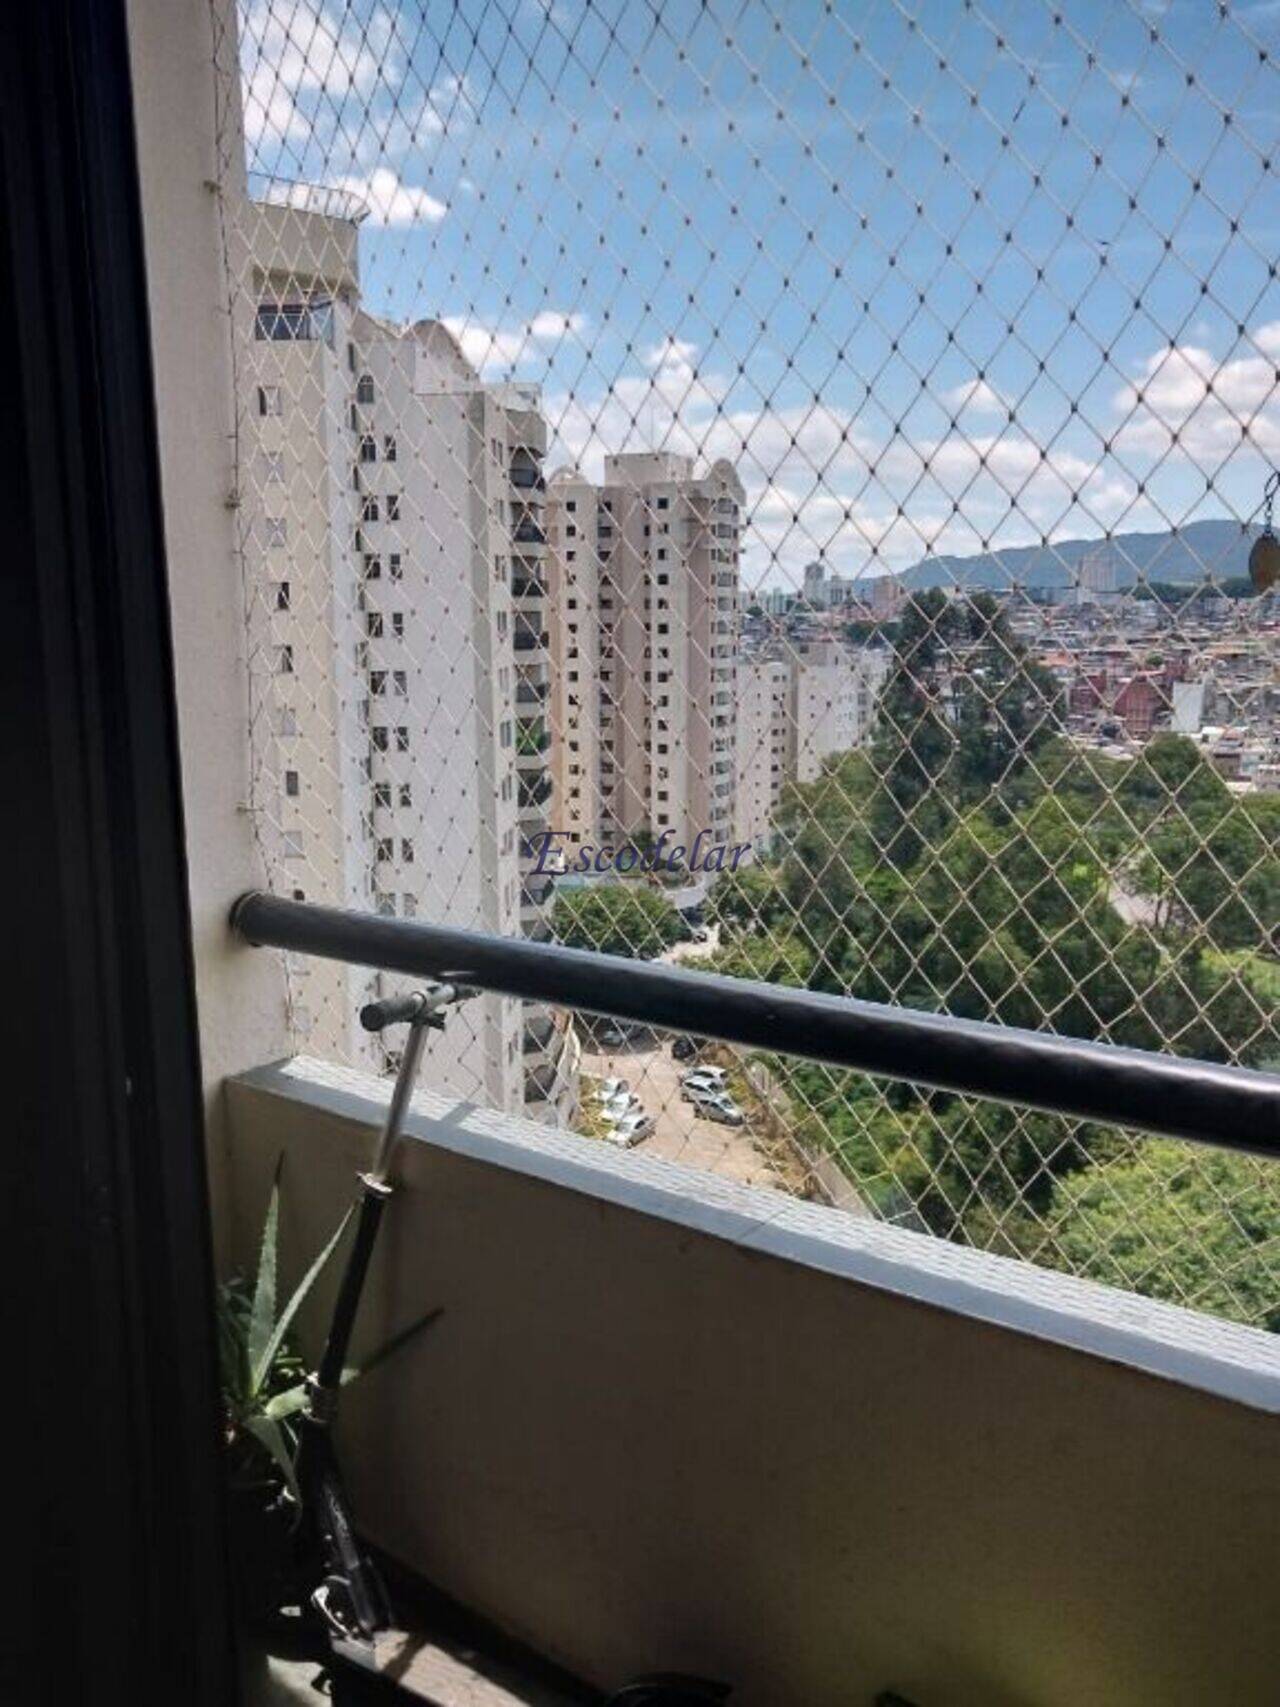 Apartamento Mandaqui, São Paulo - SP